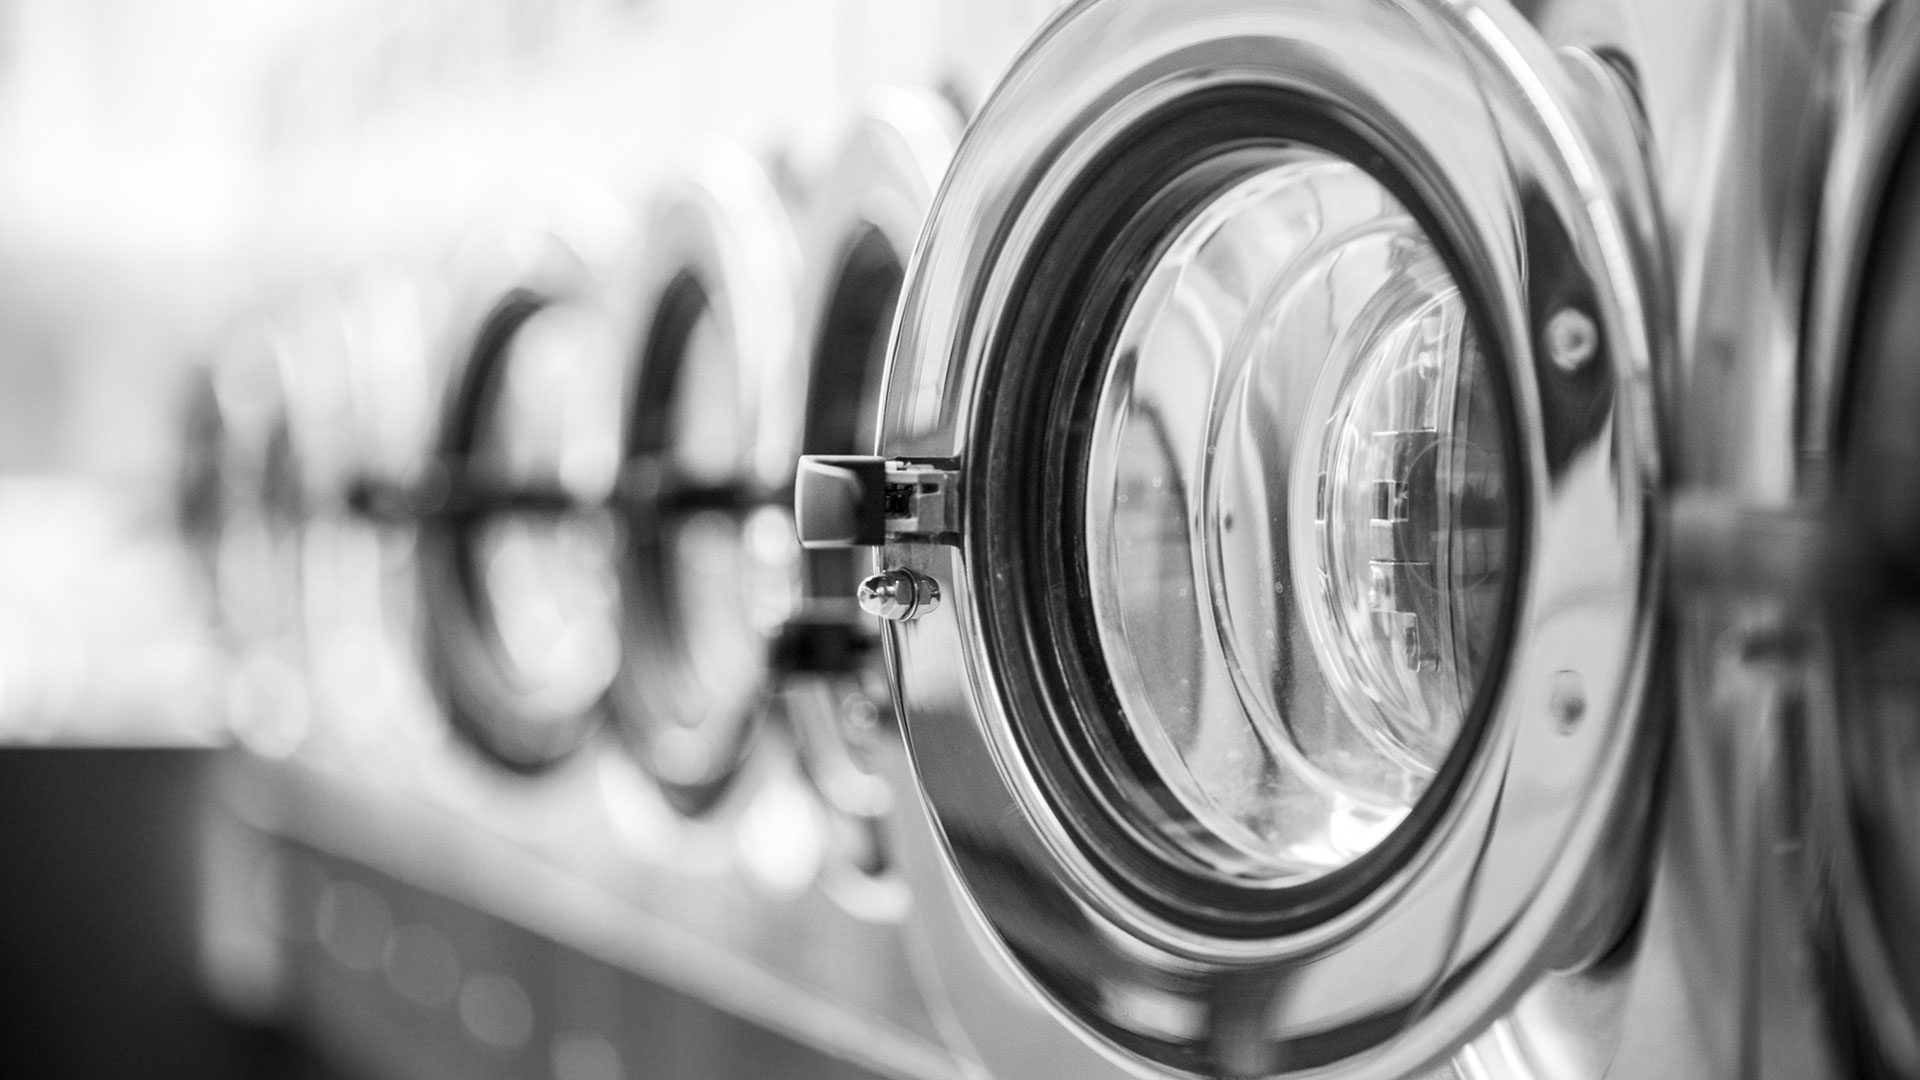 Nahaufnahme von Waschmaschinen in einer Wäscherei